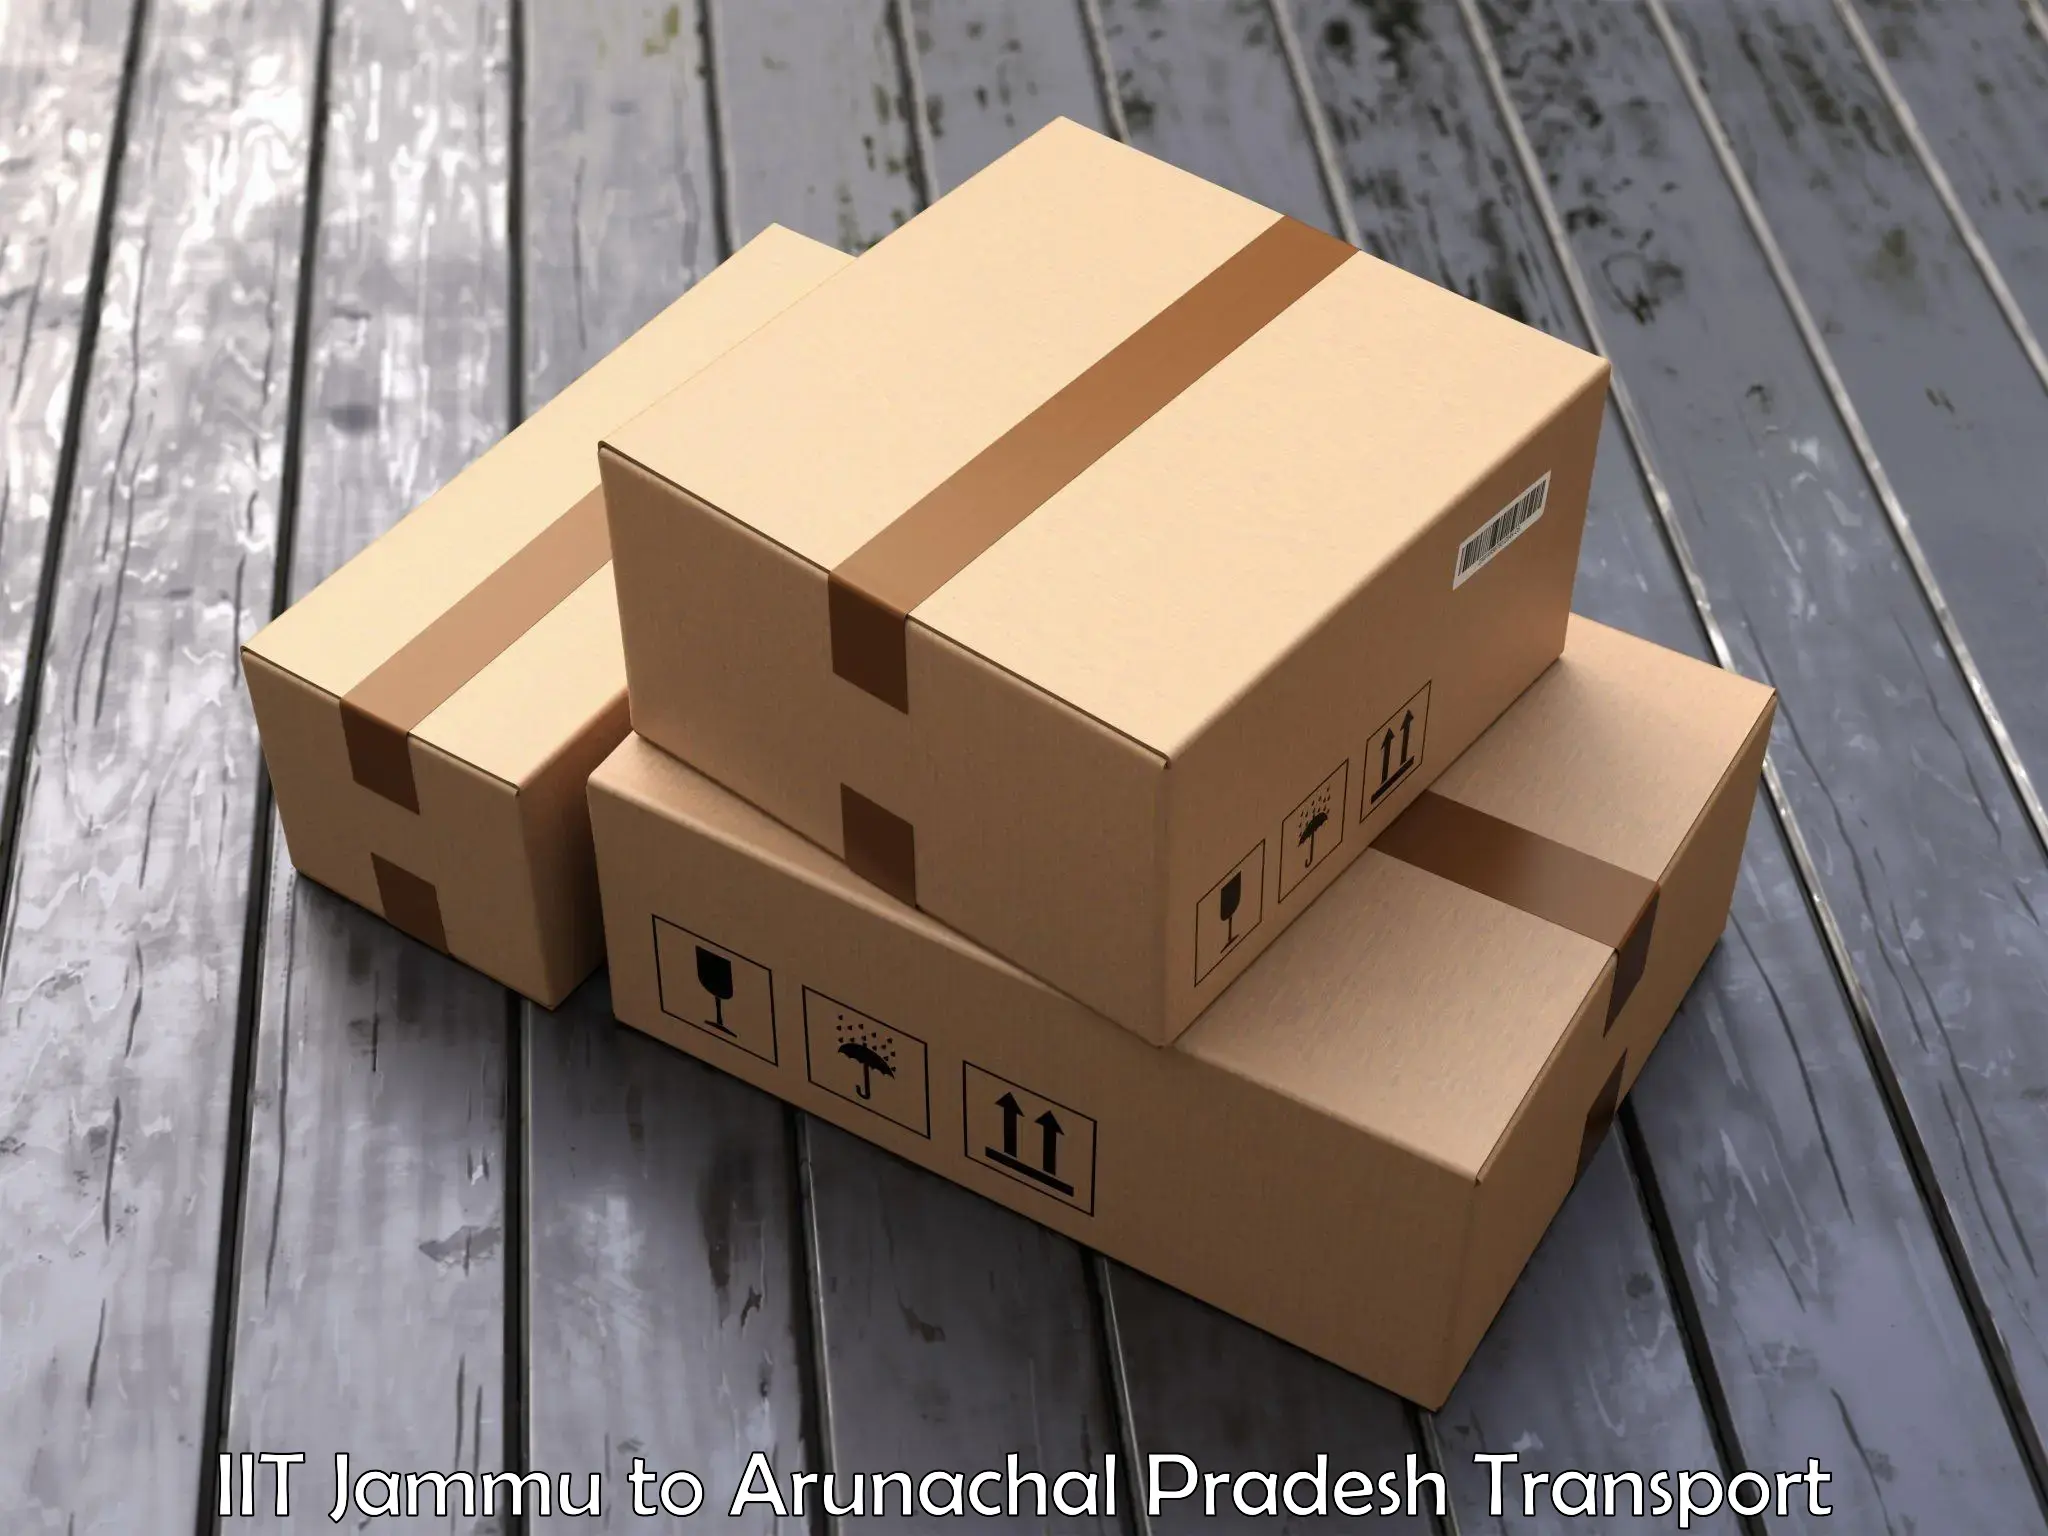 Delivery service IIT Jammu to Arunachal Pradesh